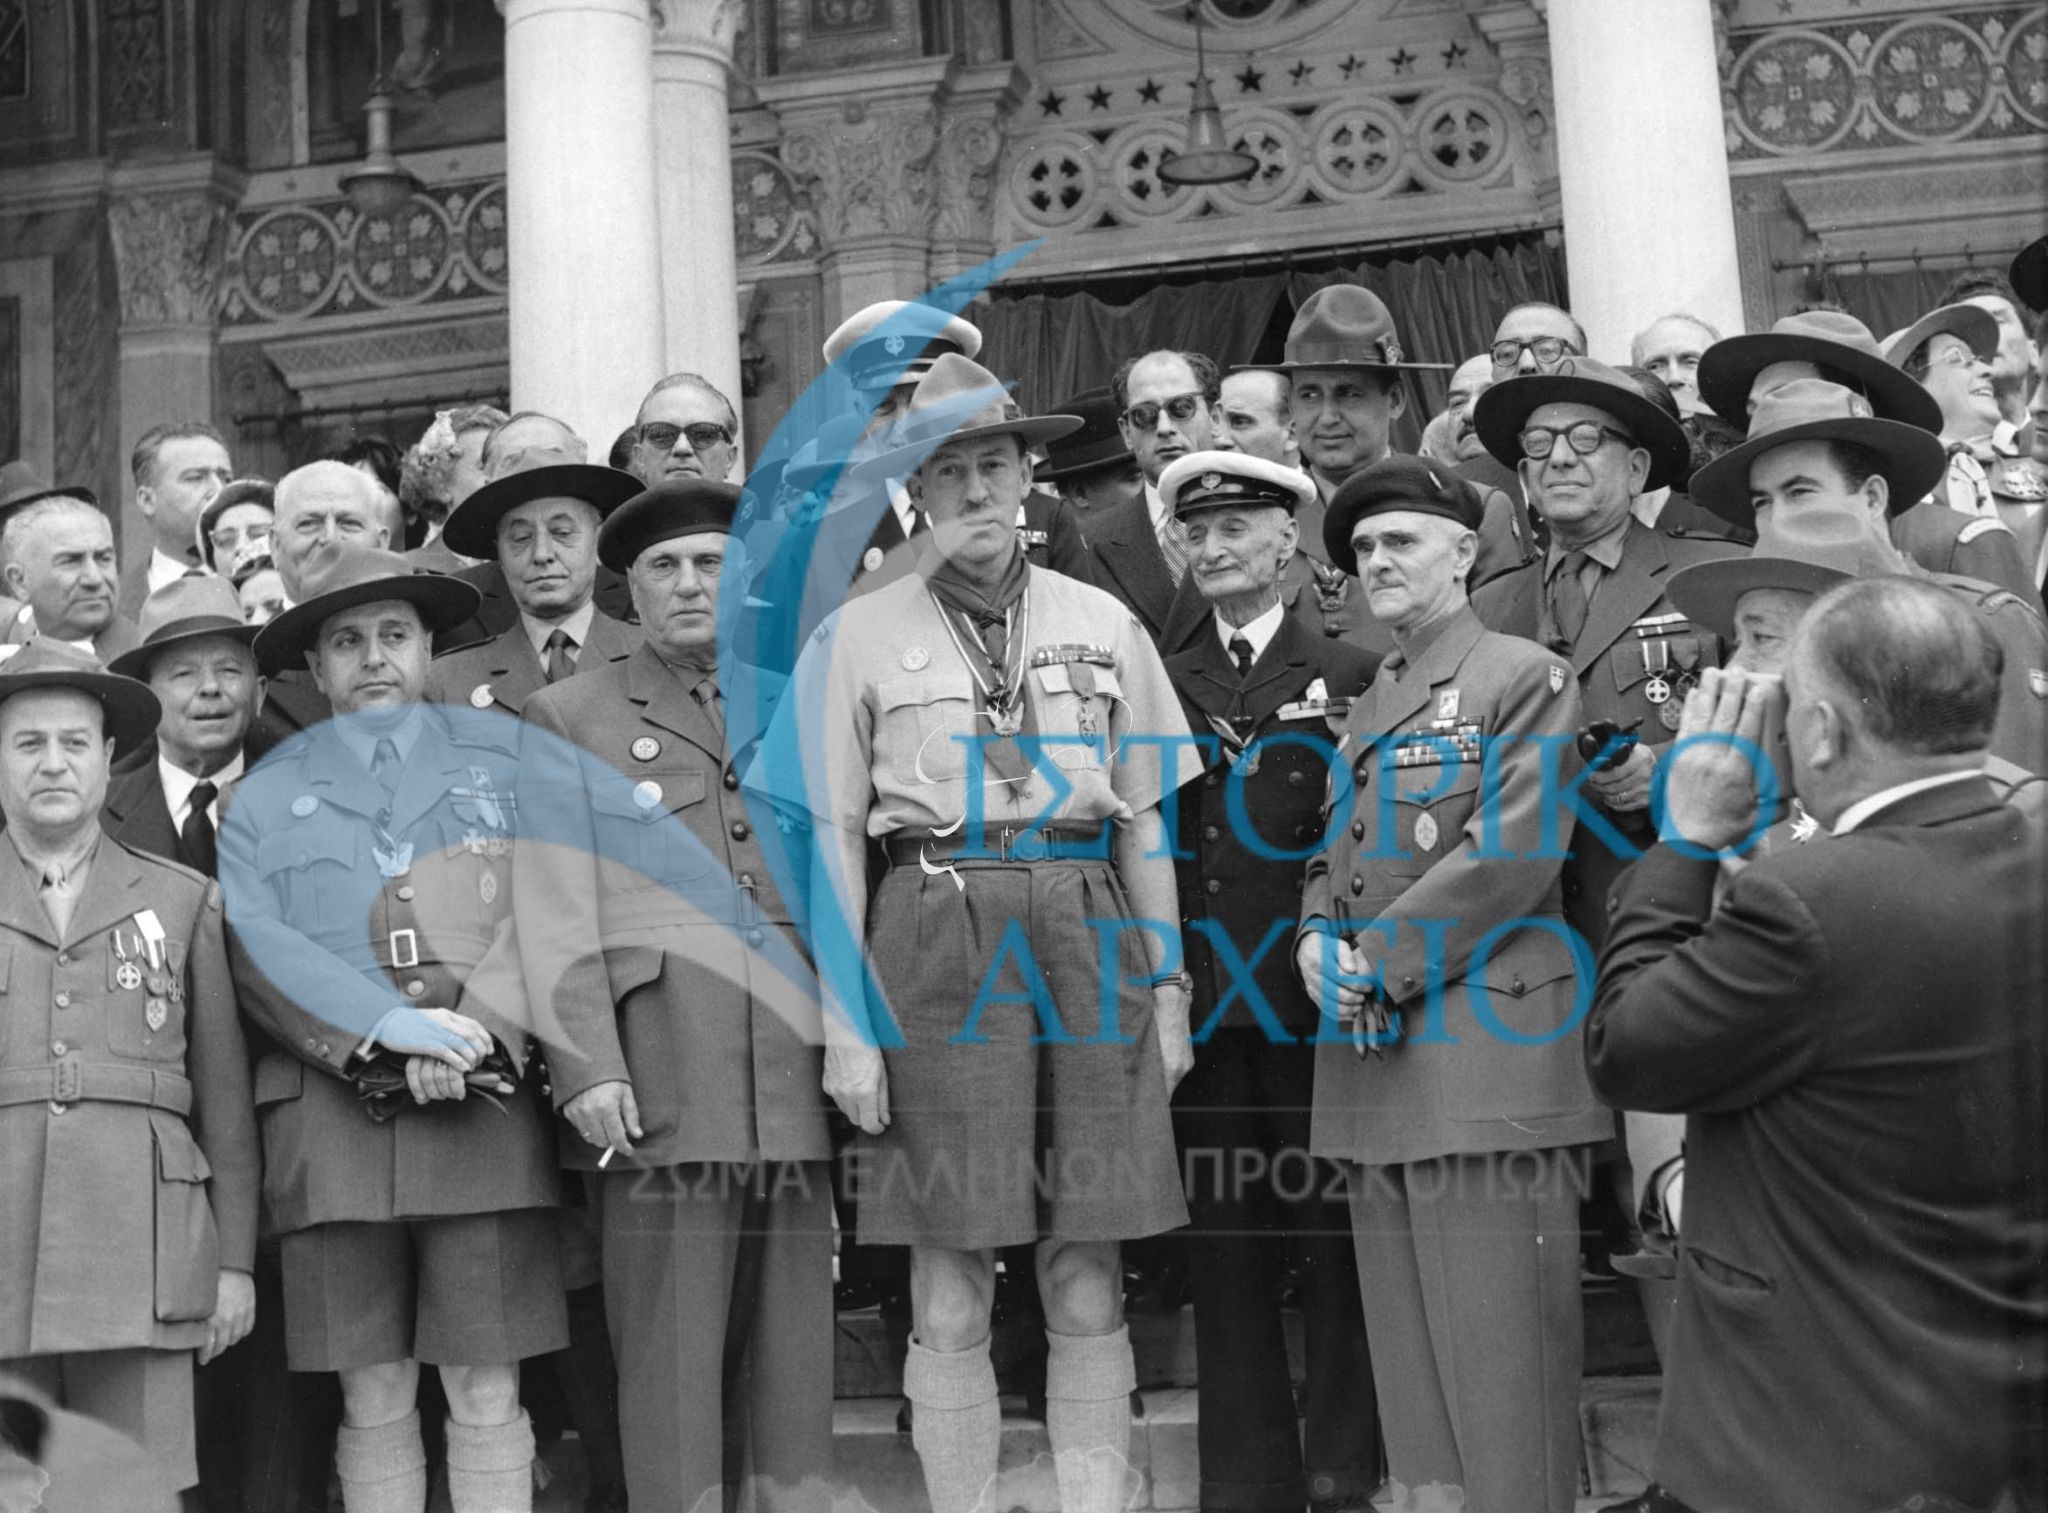 Ο Διευθυντής του Παγκόσμιου Προσκοπικού Γραφείο Στρατηγός Σπράυ με τον ΓΕ Δ. Αλεξάτο και μέλη του ΔΣ του ΣΕΠ (διακρίνονται οι Δ. Μακρίδης και Μιχ. Σοφιανός)  στην Μητρόπολη κατά την δοξολογία για το εορτασμό του Ιωβηλαίου του ΣΕΠ το 1960. 